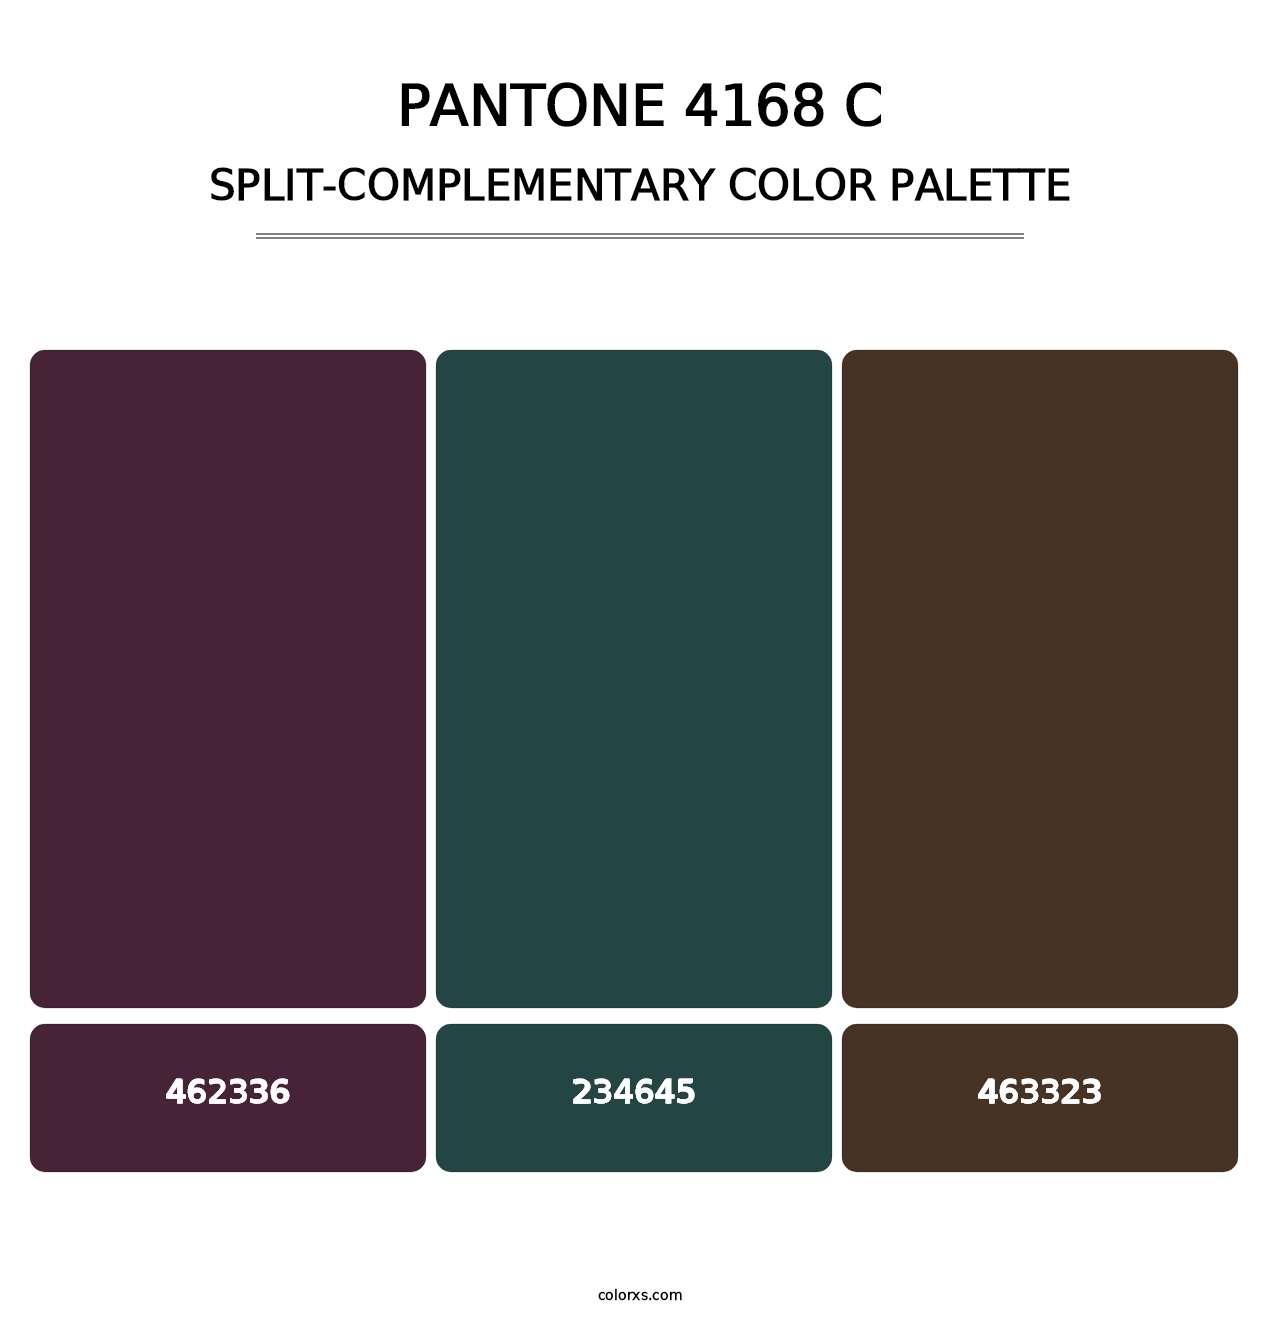 PANTONE 4168 C - Split-Complementary Color Palette